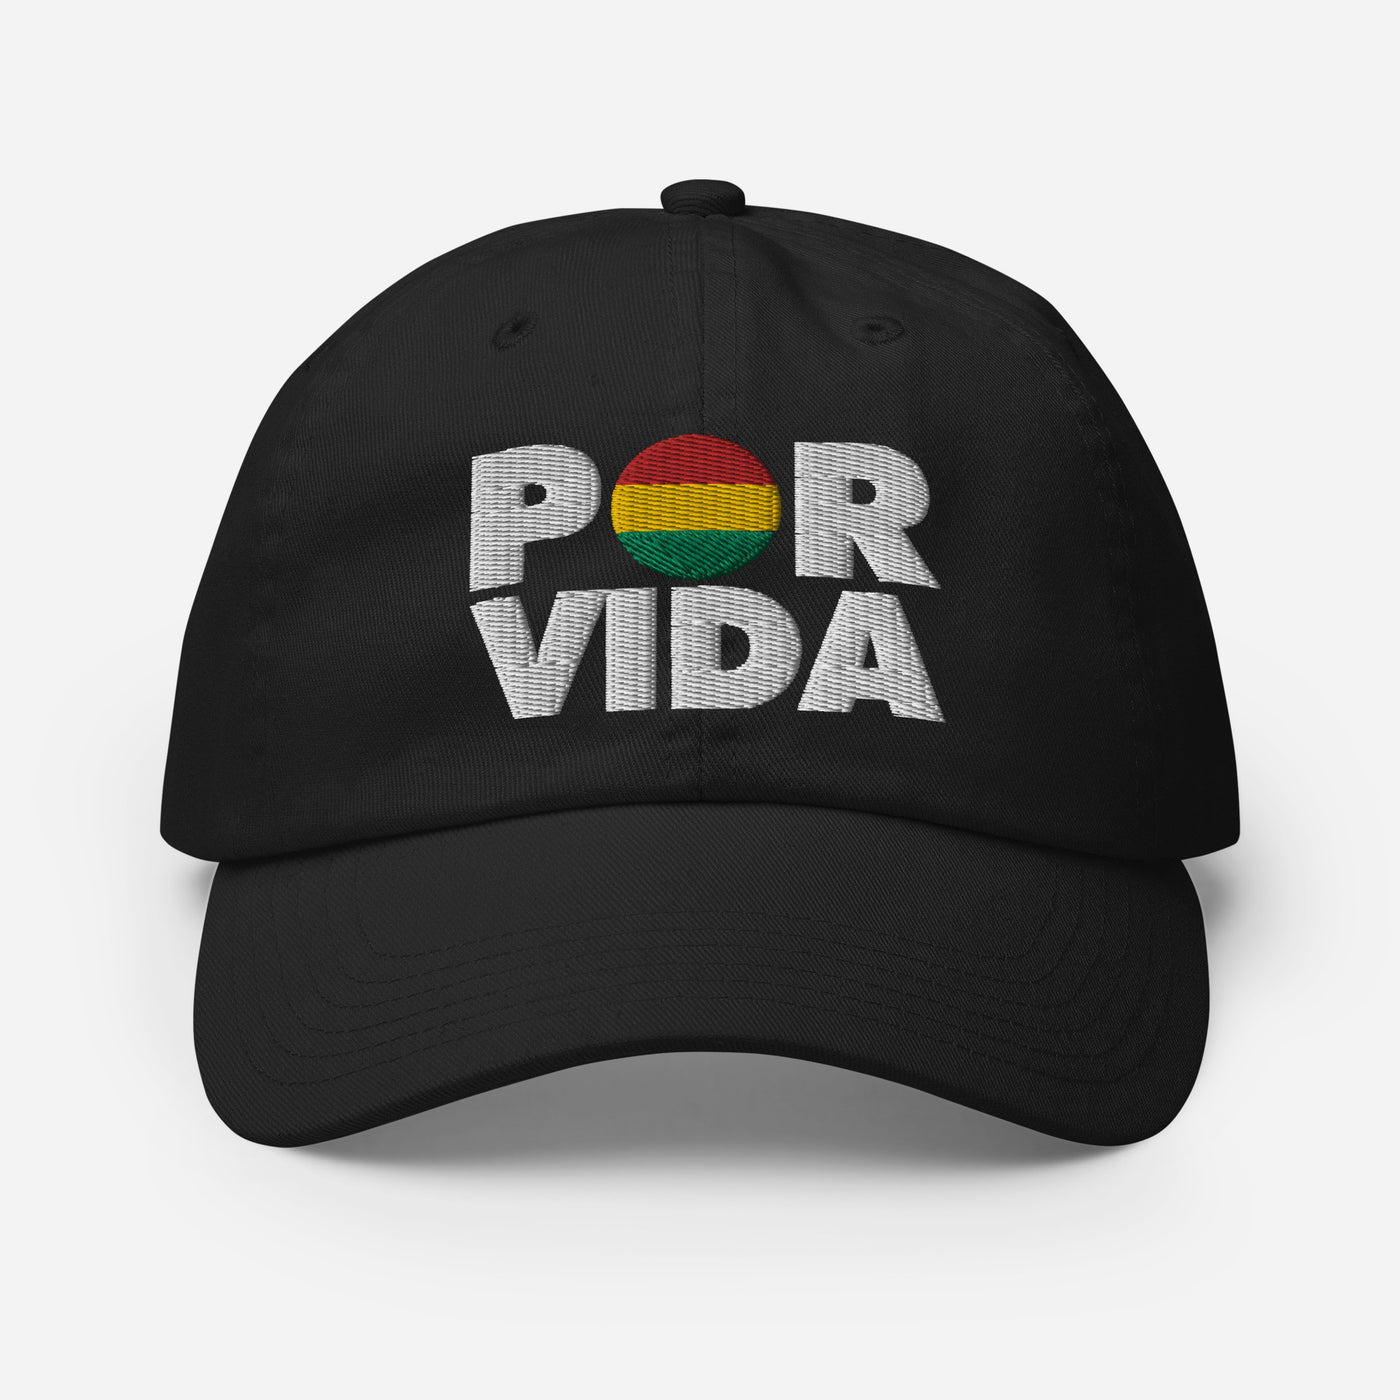 Bolivia POR VIDA Champion Dad Cap